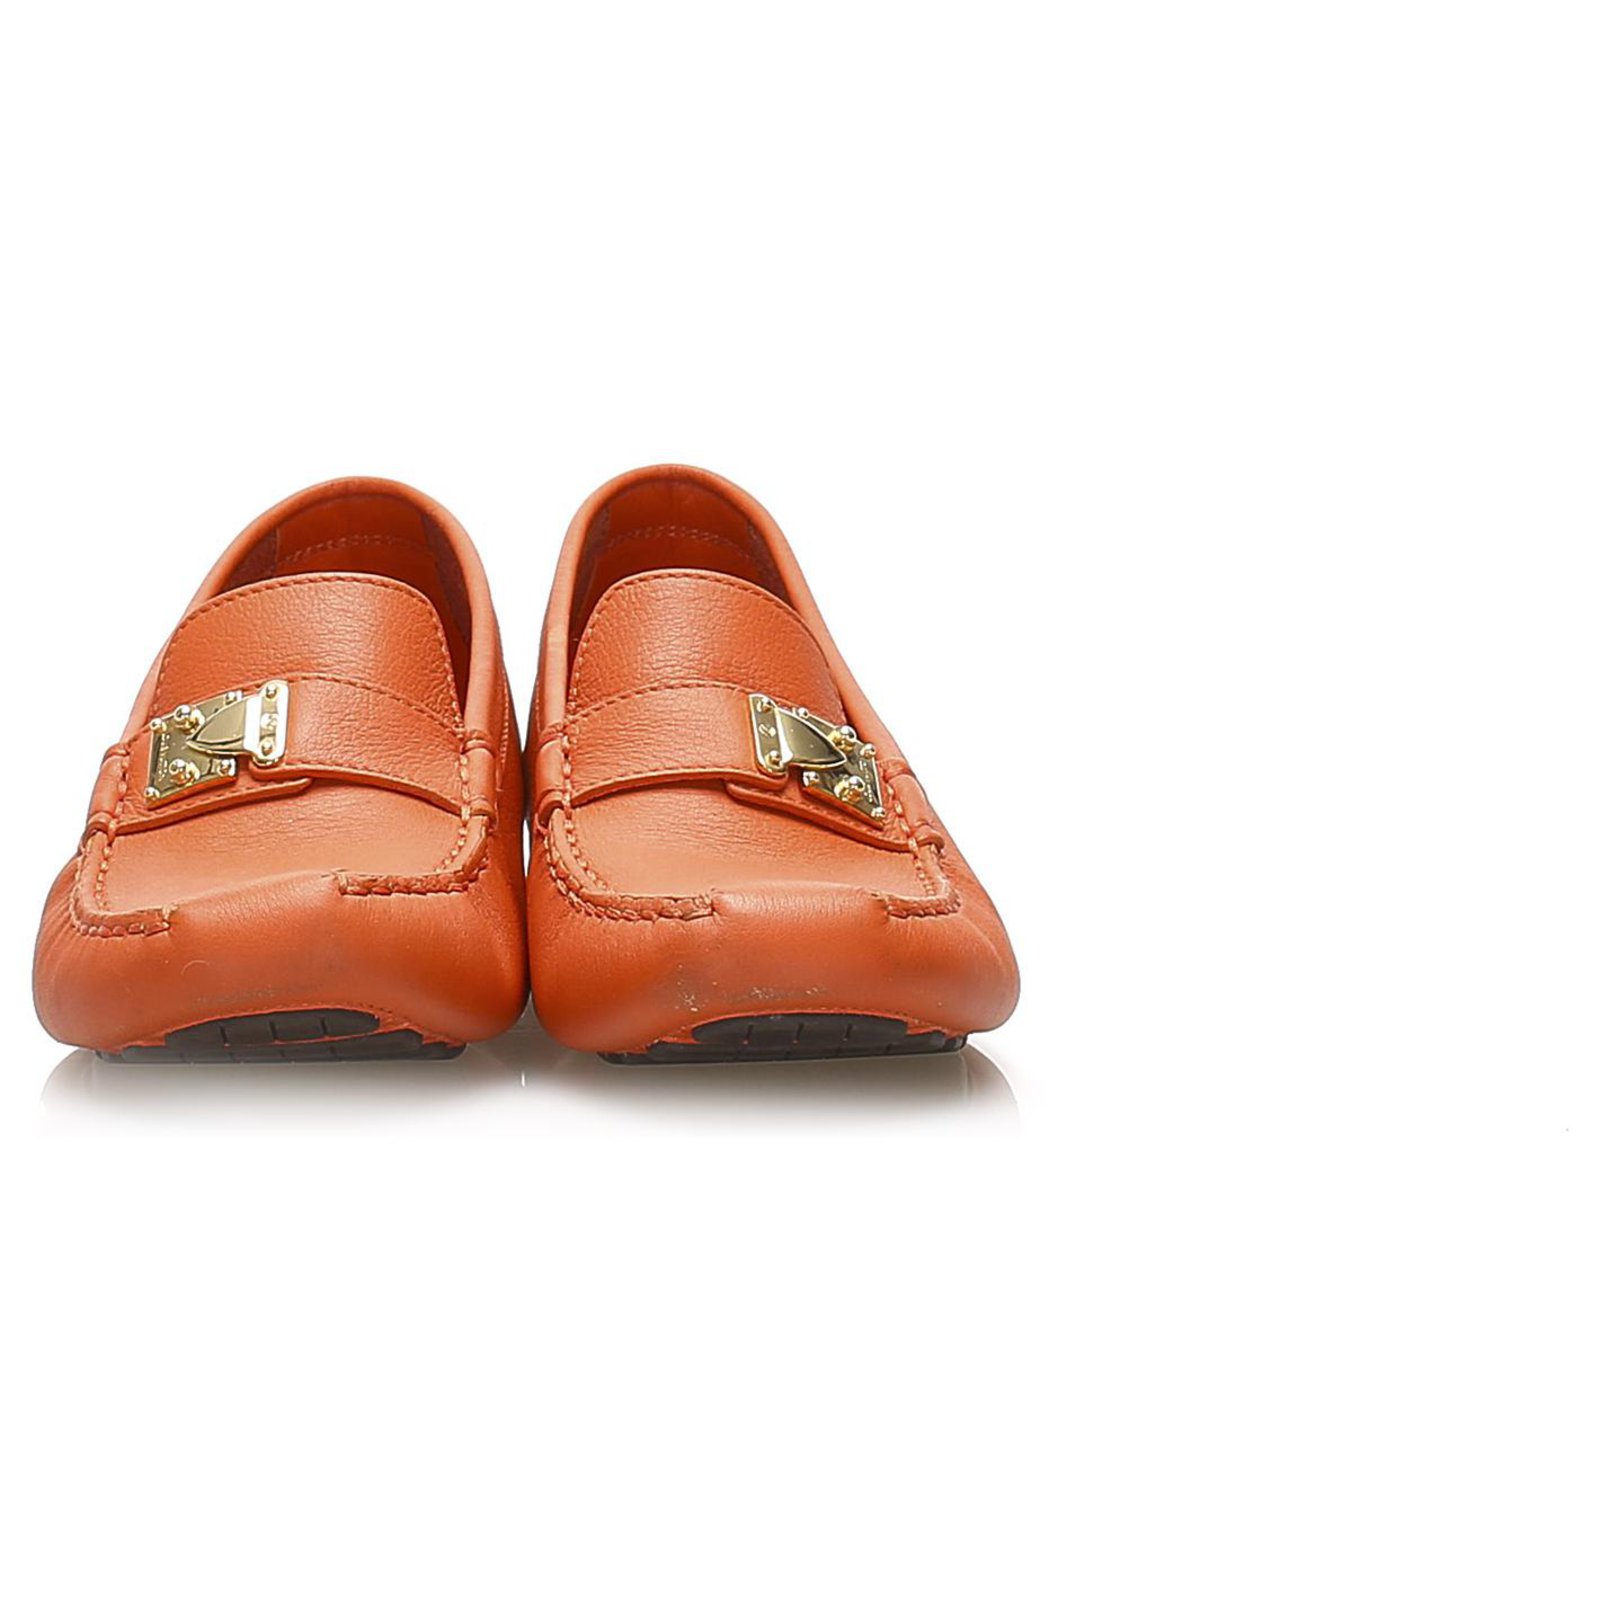 Women's Orange Louis Vuitton Shoes